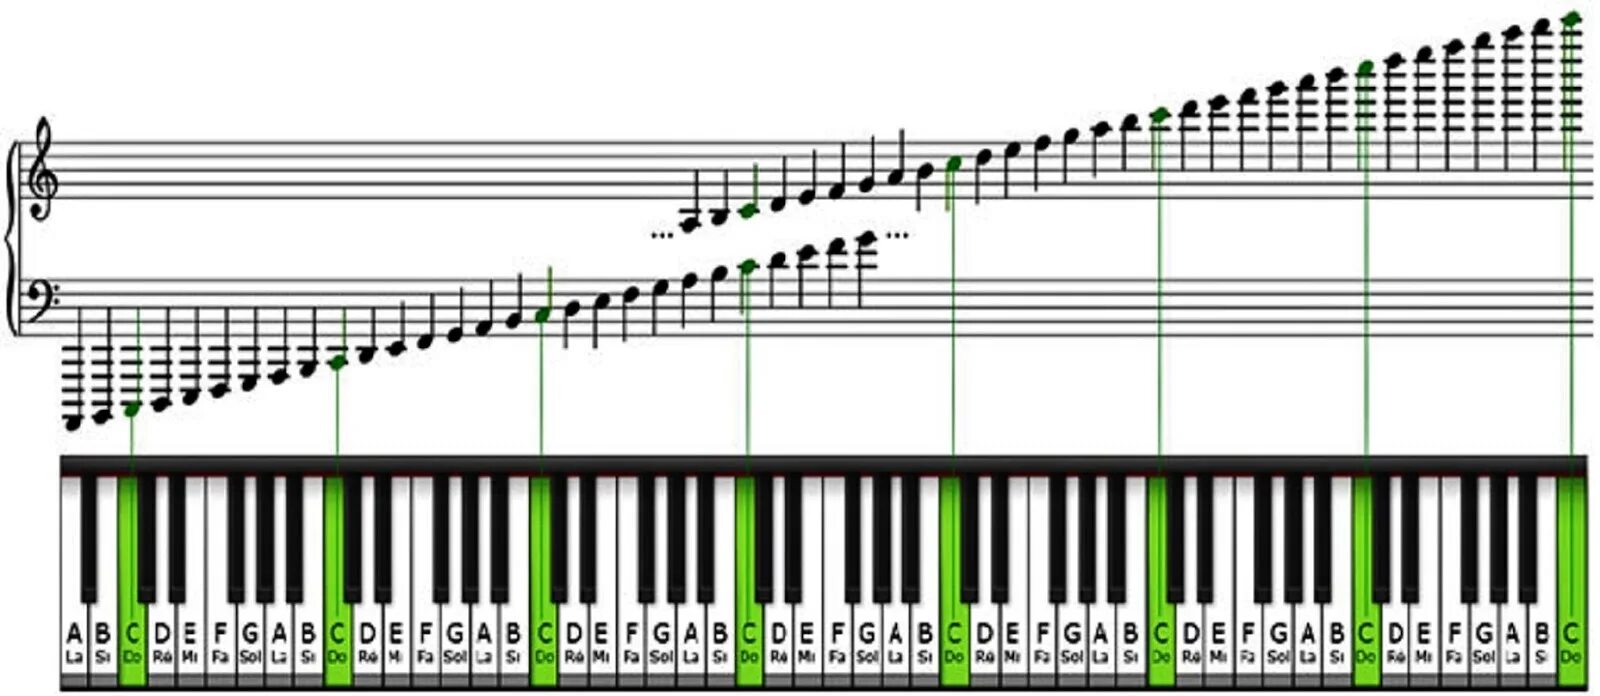 Как звучат октавы. Ноты на синтезаторе 61 клавиша. Диапазон фортепиано октавы. Расположение нот на клавишах синтезатора 61 клавиша. Расположение нот на синтезаторе 61 клавиша.